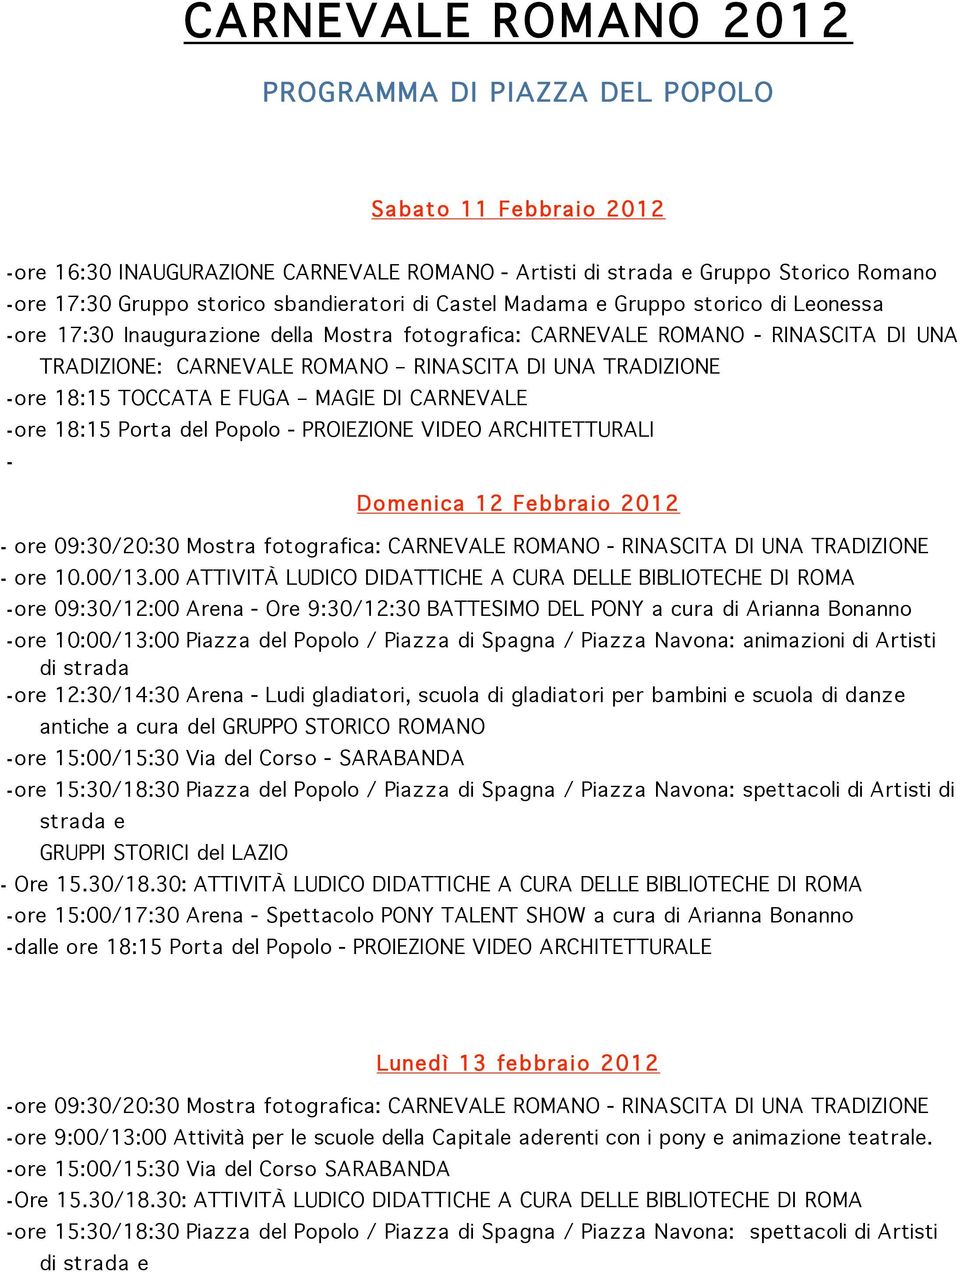 TOCCATA E FUGA MAGIE DI CARNEVALE - ore 18:15 Porta del Popolo - PROIEZIONE VIDEO ARCHITETTURALI - Domenica 12 Febbra io 2012 - ore 10.00/13.